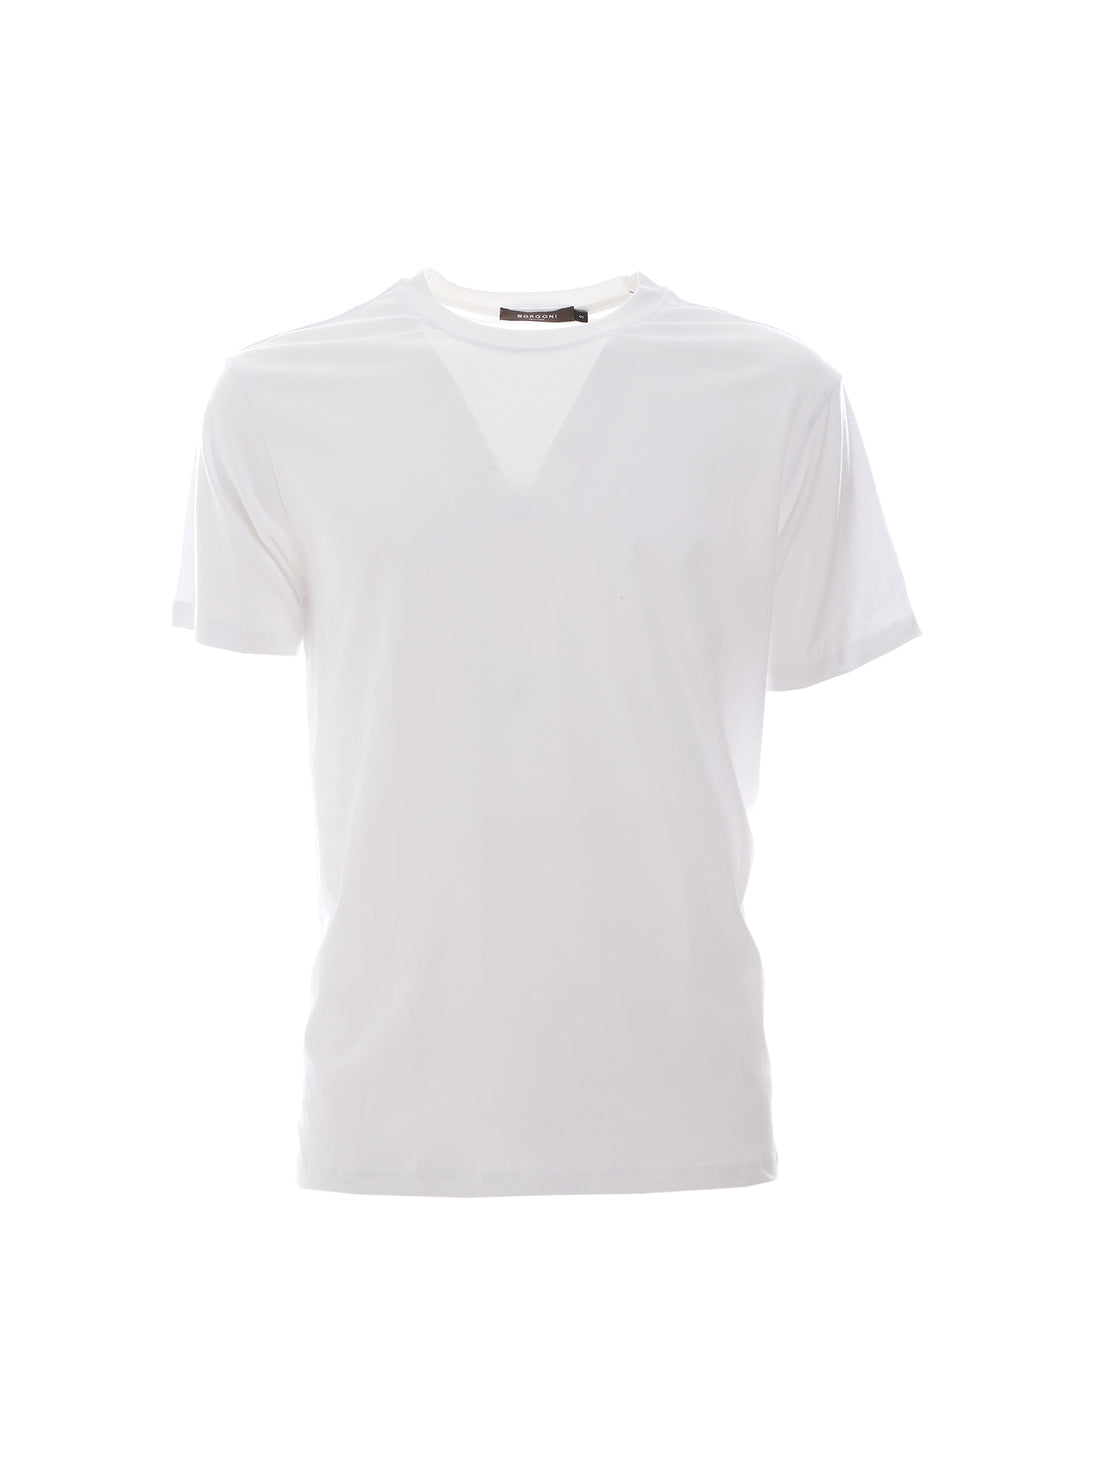 T-shirt Bianco Borgoni Milano